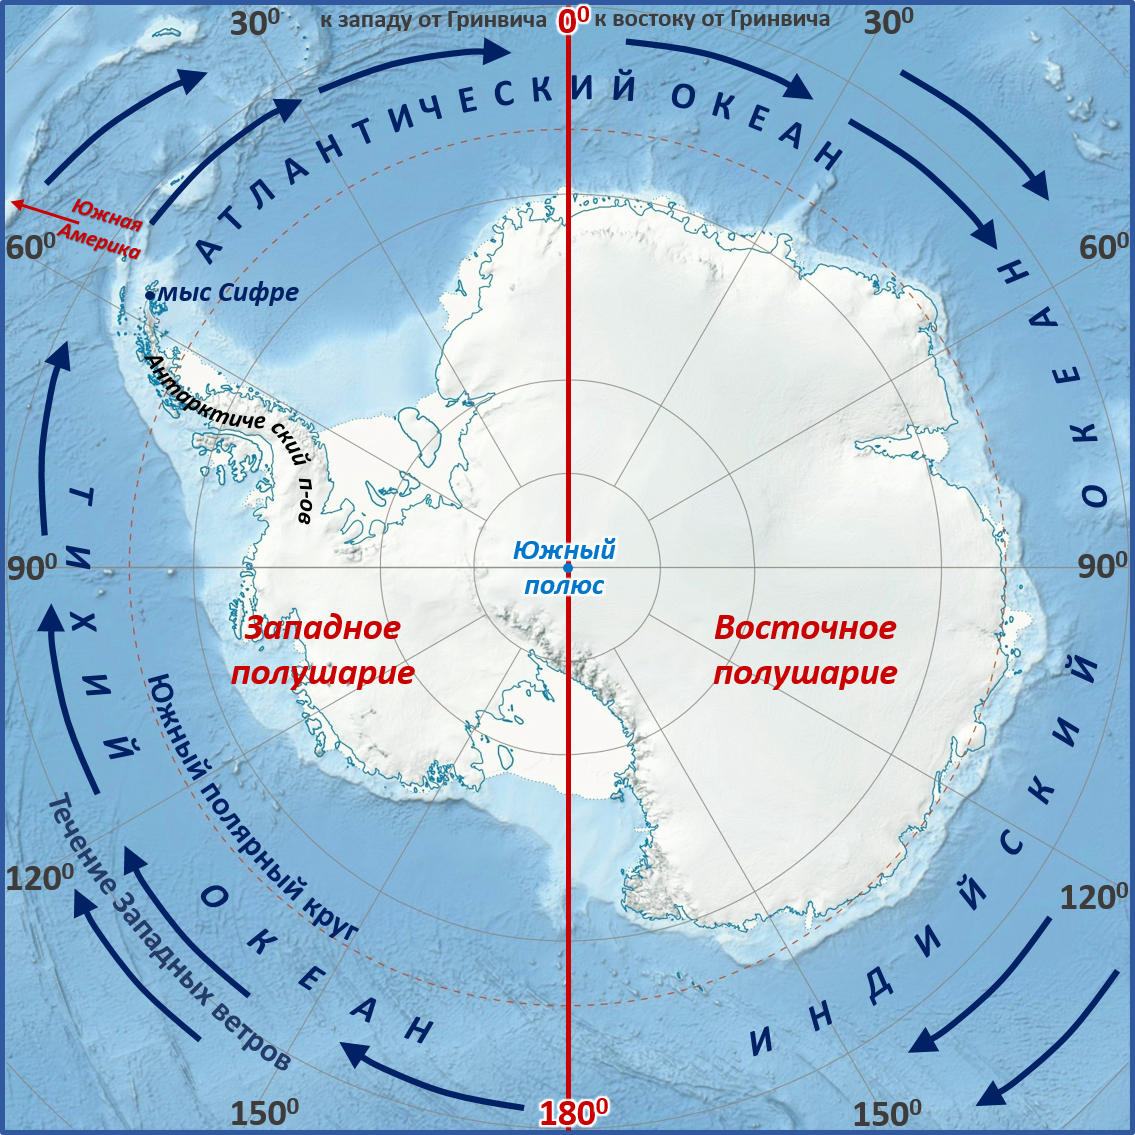 Мыс Сифре на карте Антарктиды. Моря: Амундсена, Беллинсгаузена, Росса, Уэдделла.. Мыс Сифре Антарктида. Южный полюс на карте Антарктиды.